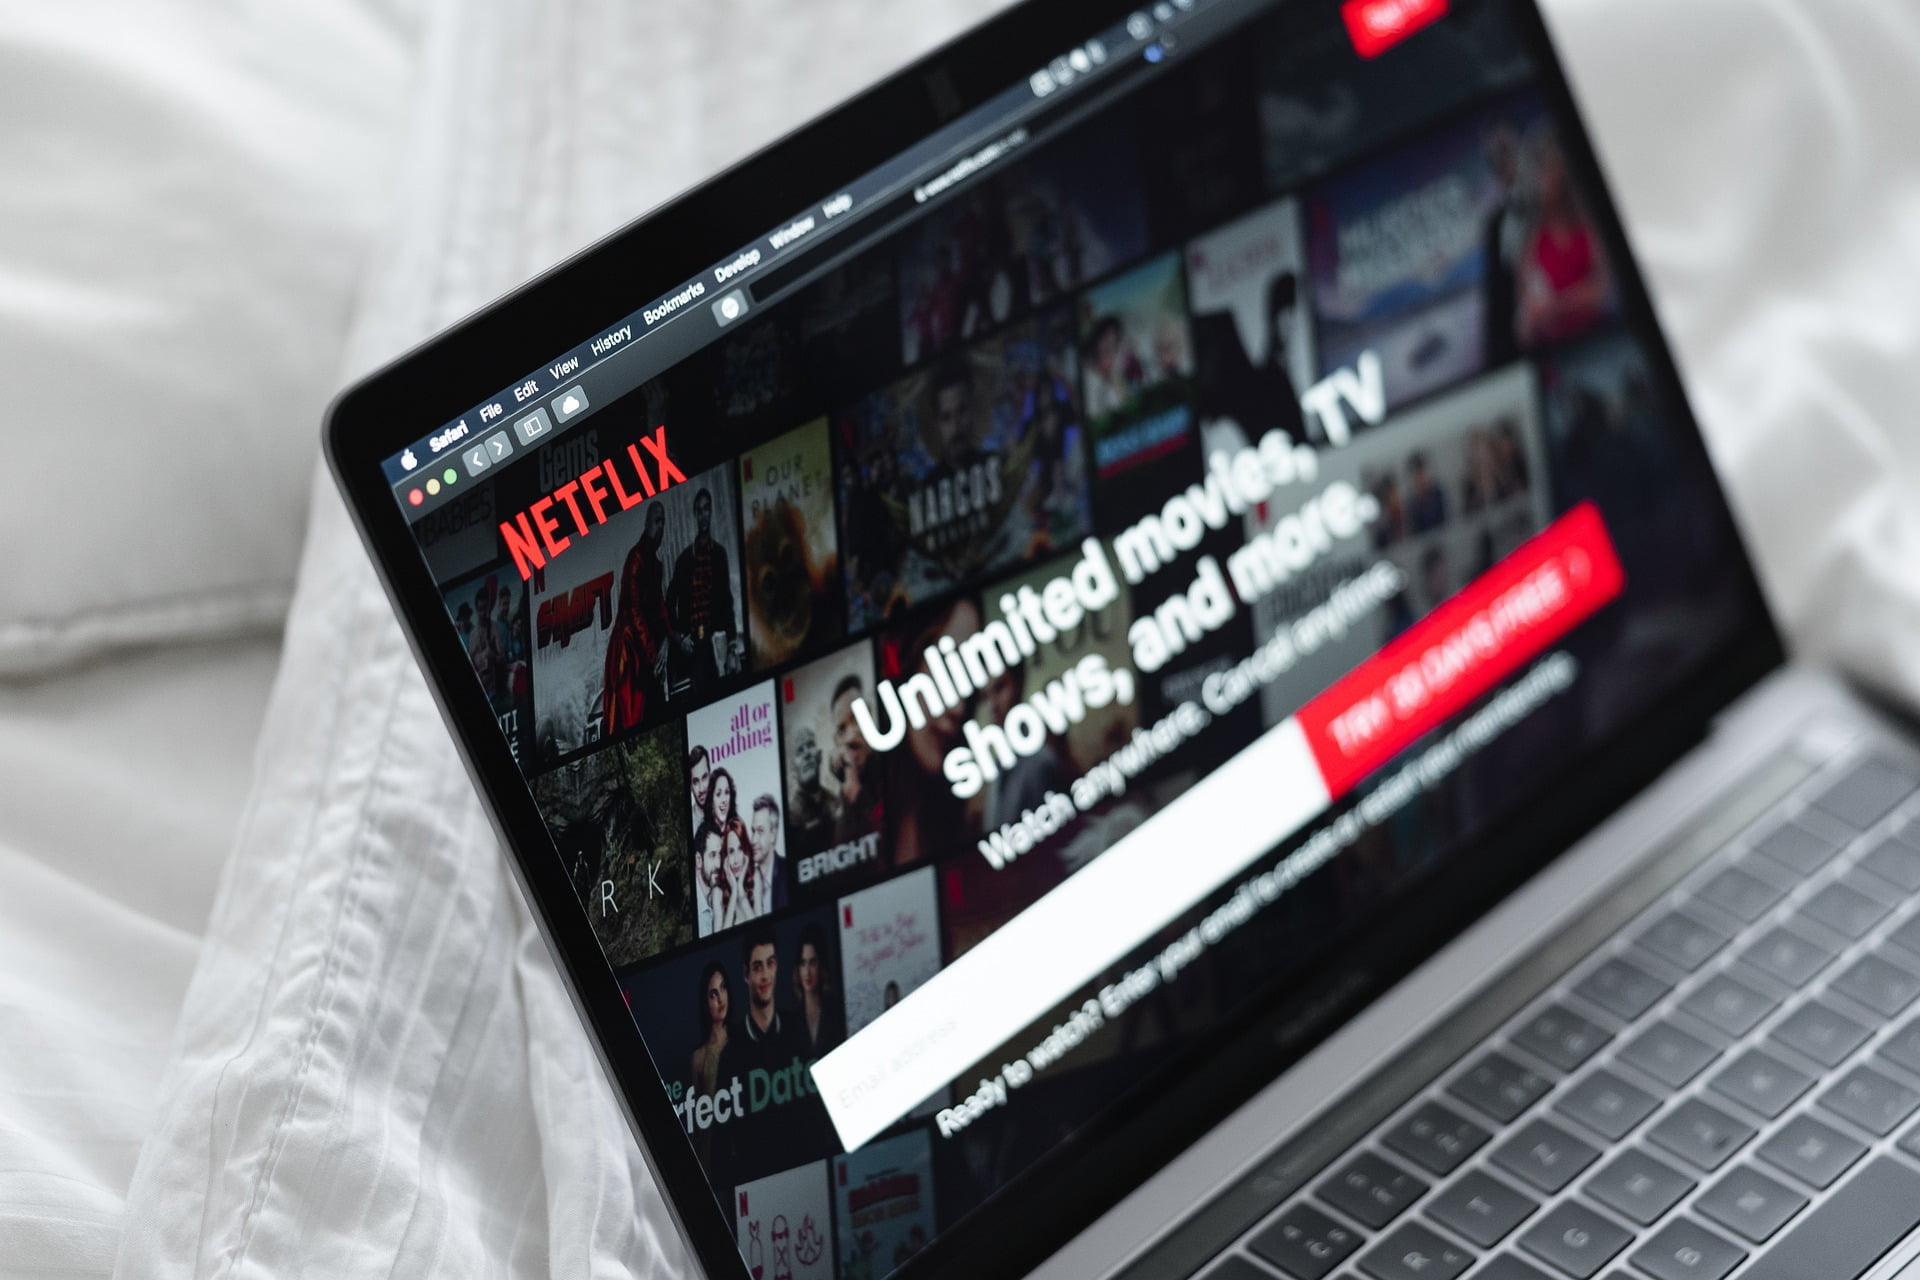 Strona Netflix otworzona na laptopie. Laptop leży na łóżku i białej pościeli